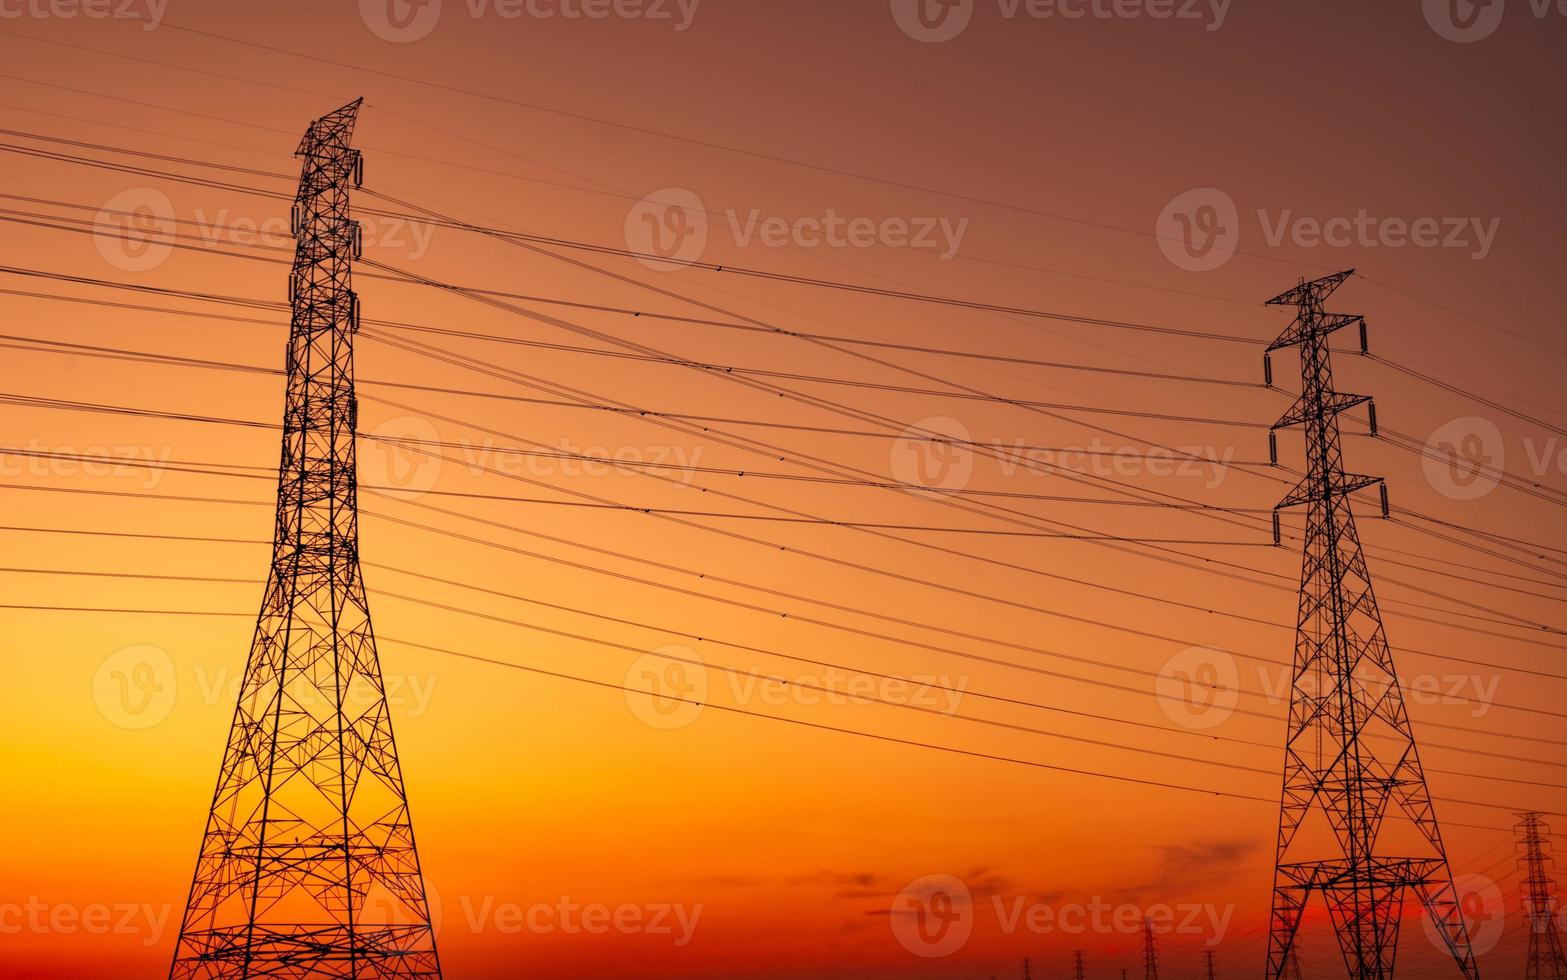 pilón eléctrico de alto voltaje y cable eléctrico con cielo al atardecer. postes de electricidad concepto de fábrica de soporte de energía y energía. torre de red de alto voltaje con cable de alambre. hermoso cielo de puesta de sol rojo-naranja. foto